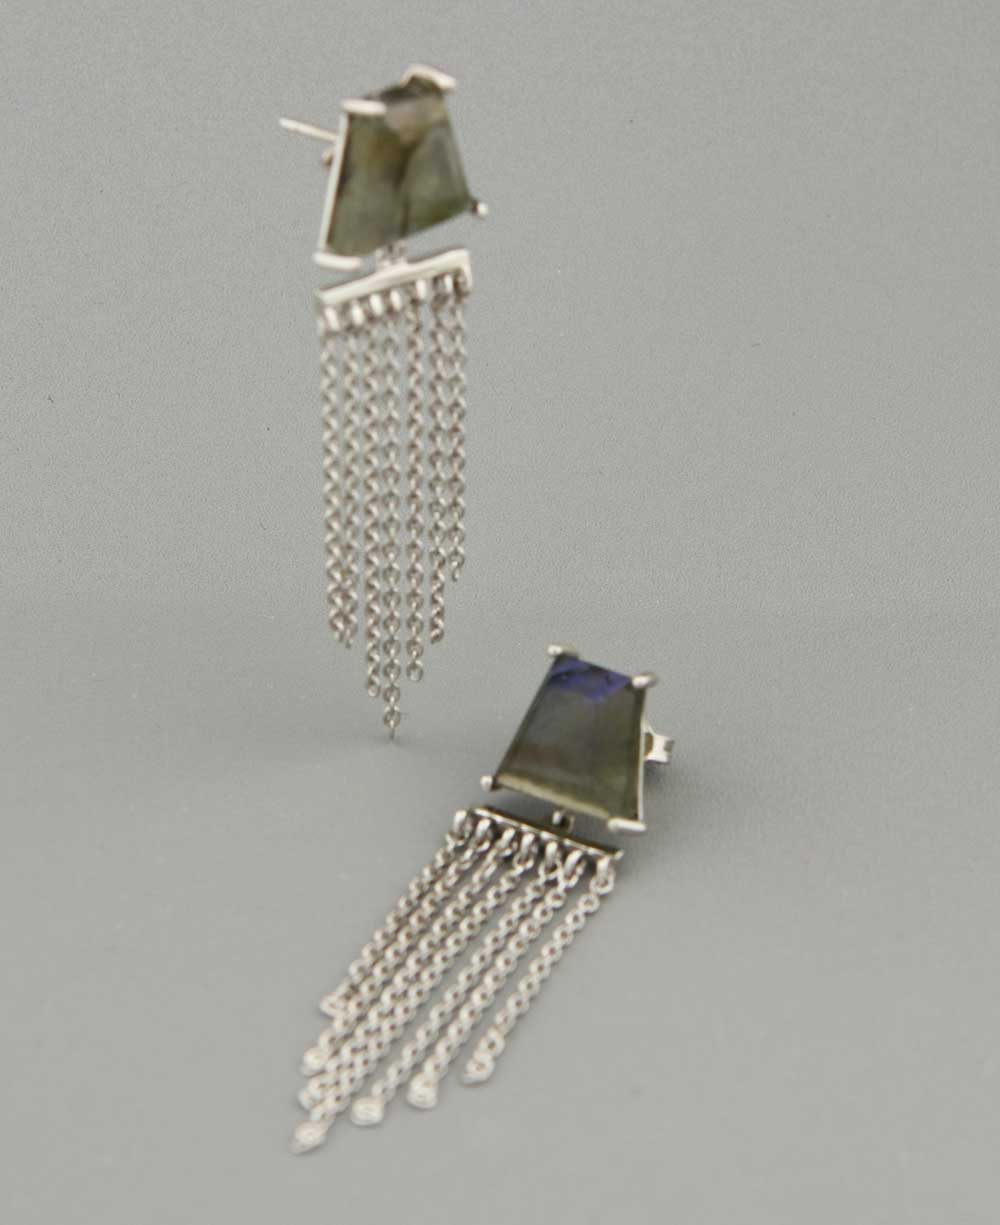 Labradorite Chandelier Earrings, Sterling Silver - Jewelry